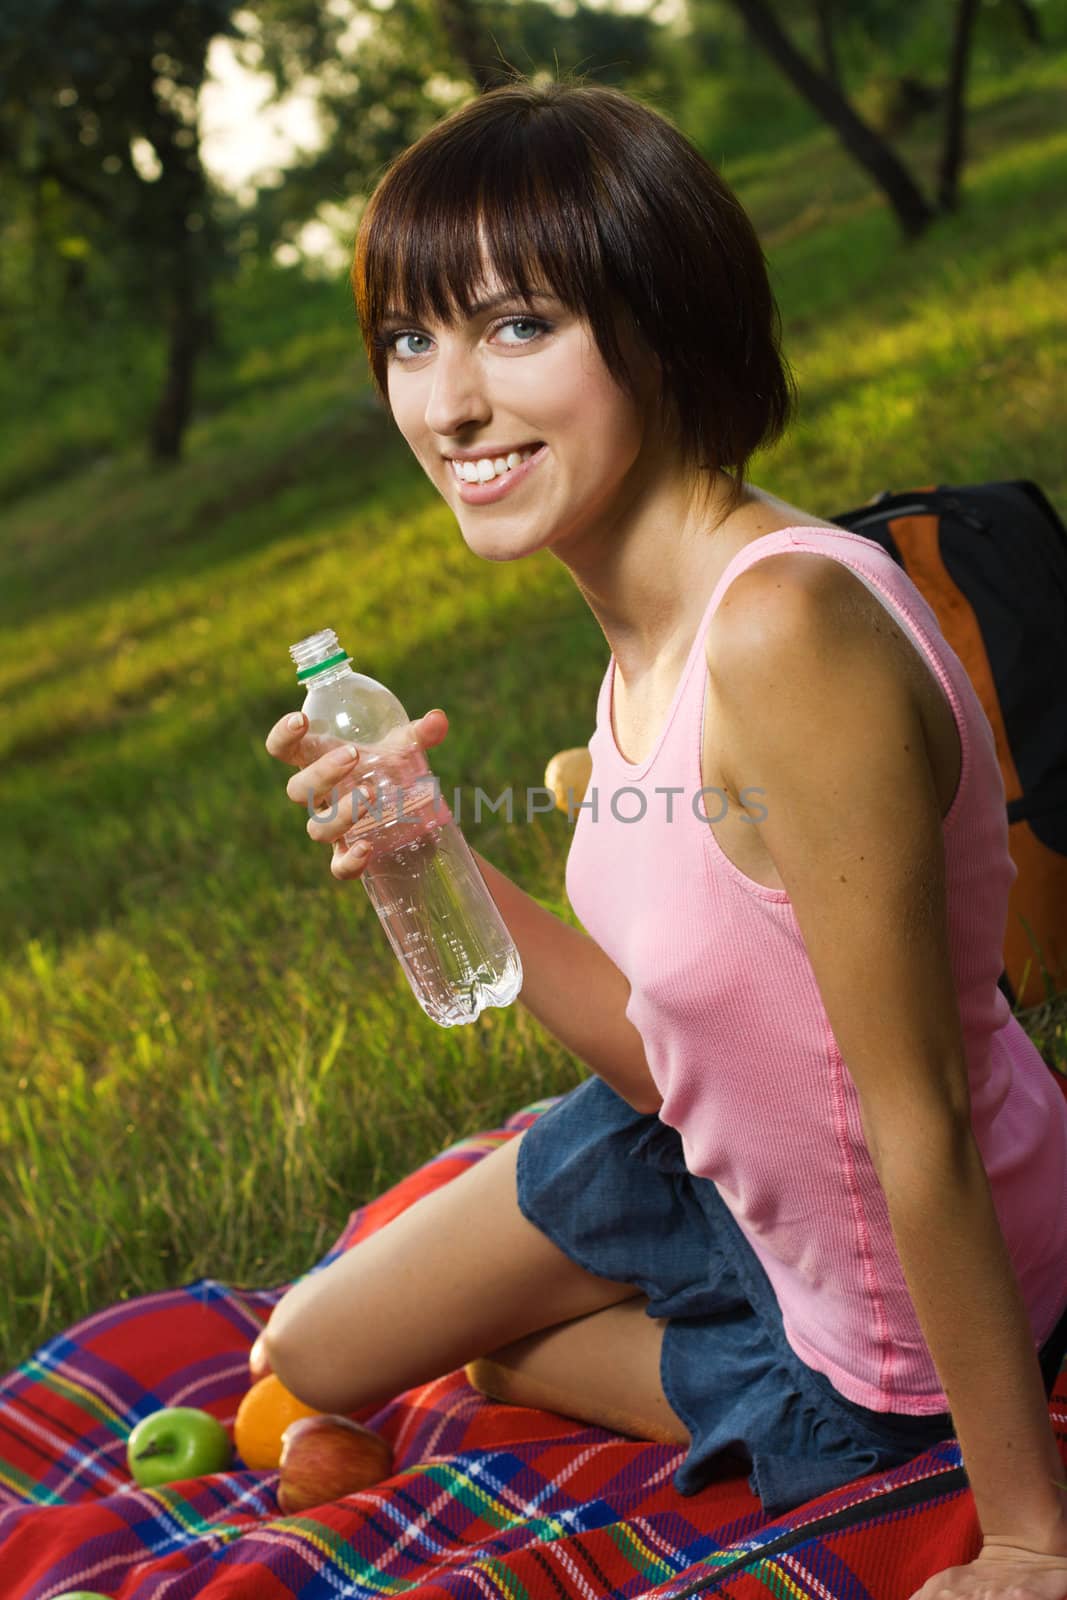 Lovely girl on picnic by Gdolgikh